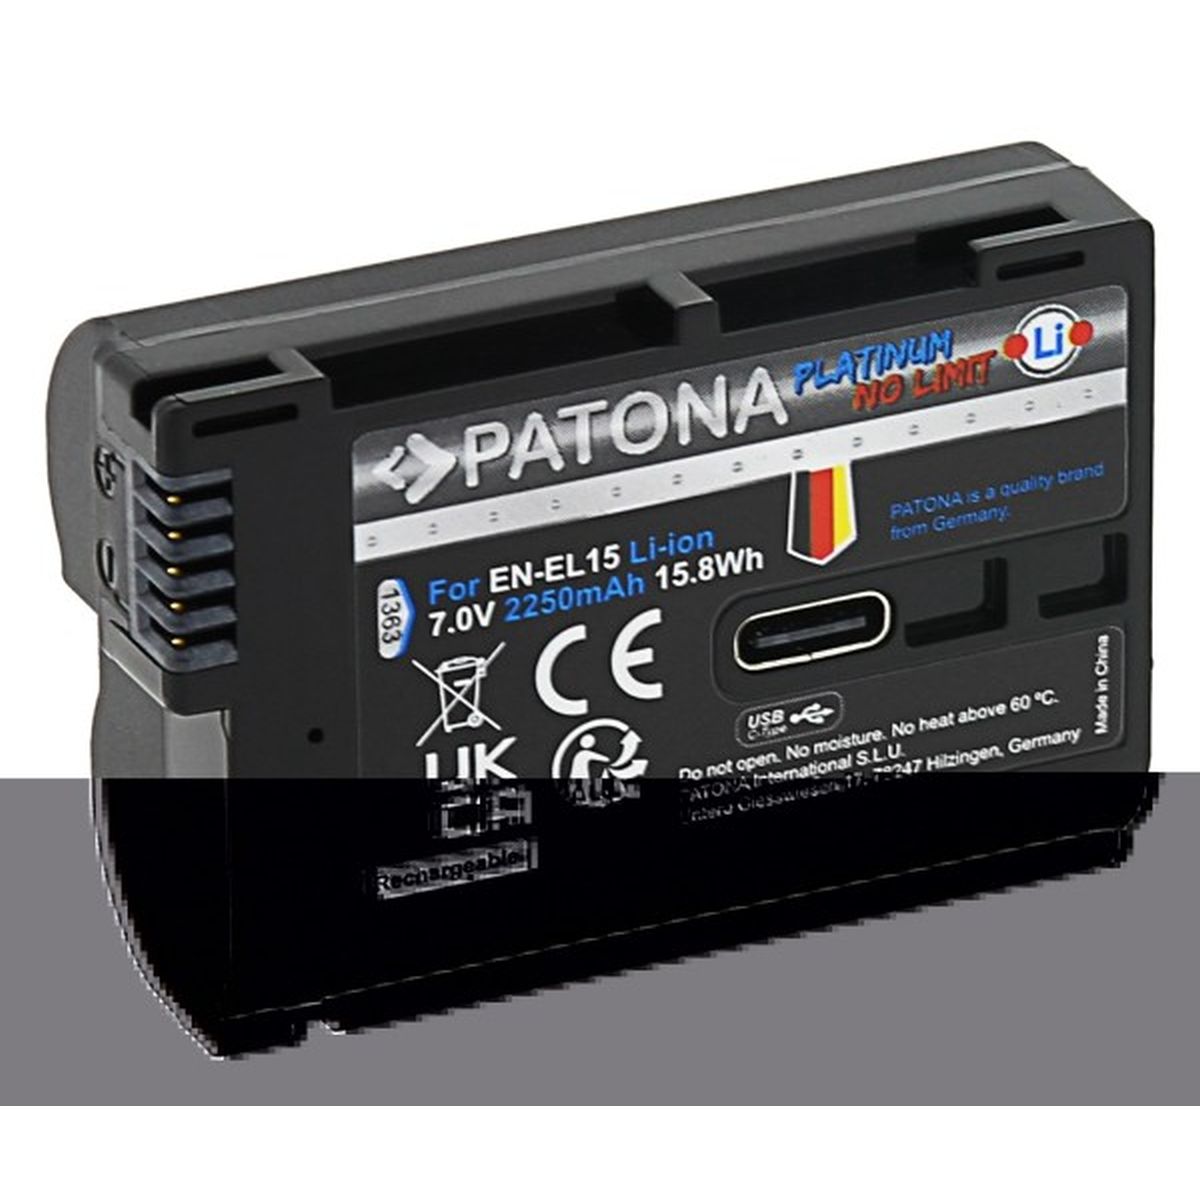 Patona Platinum Akku EN-EL15 mit USB-C Input für Nikon-Kameras